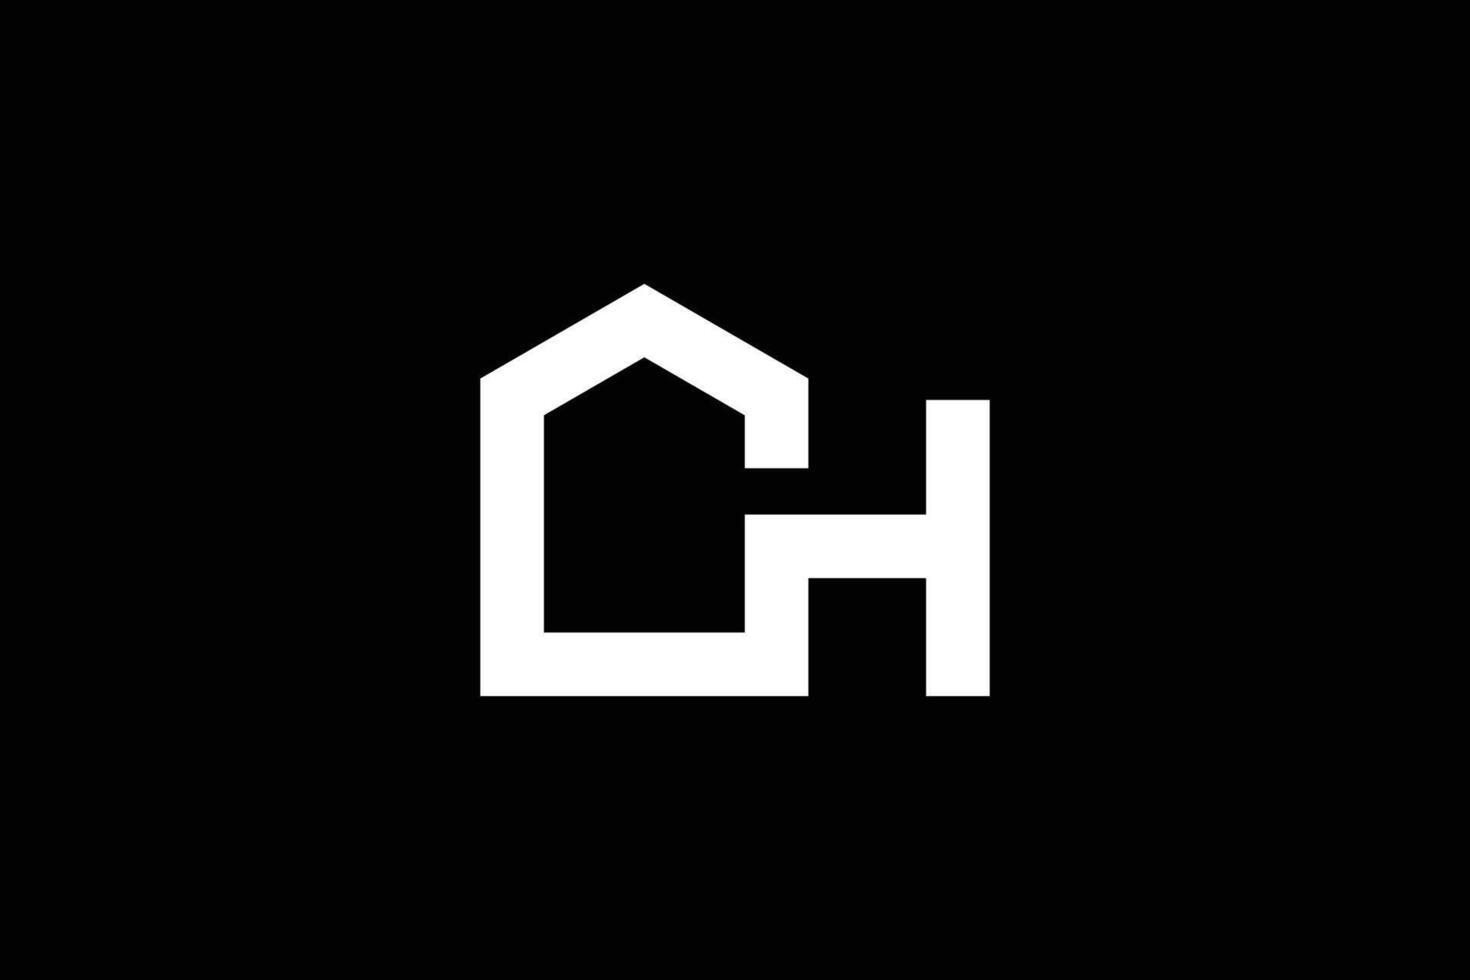 letra ch hogar o real inmuebles logo diseño modelo vector